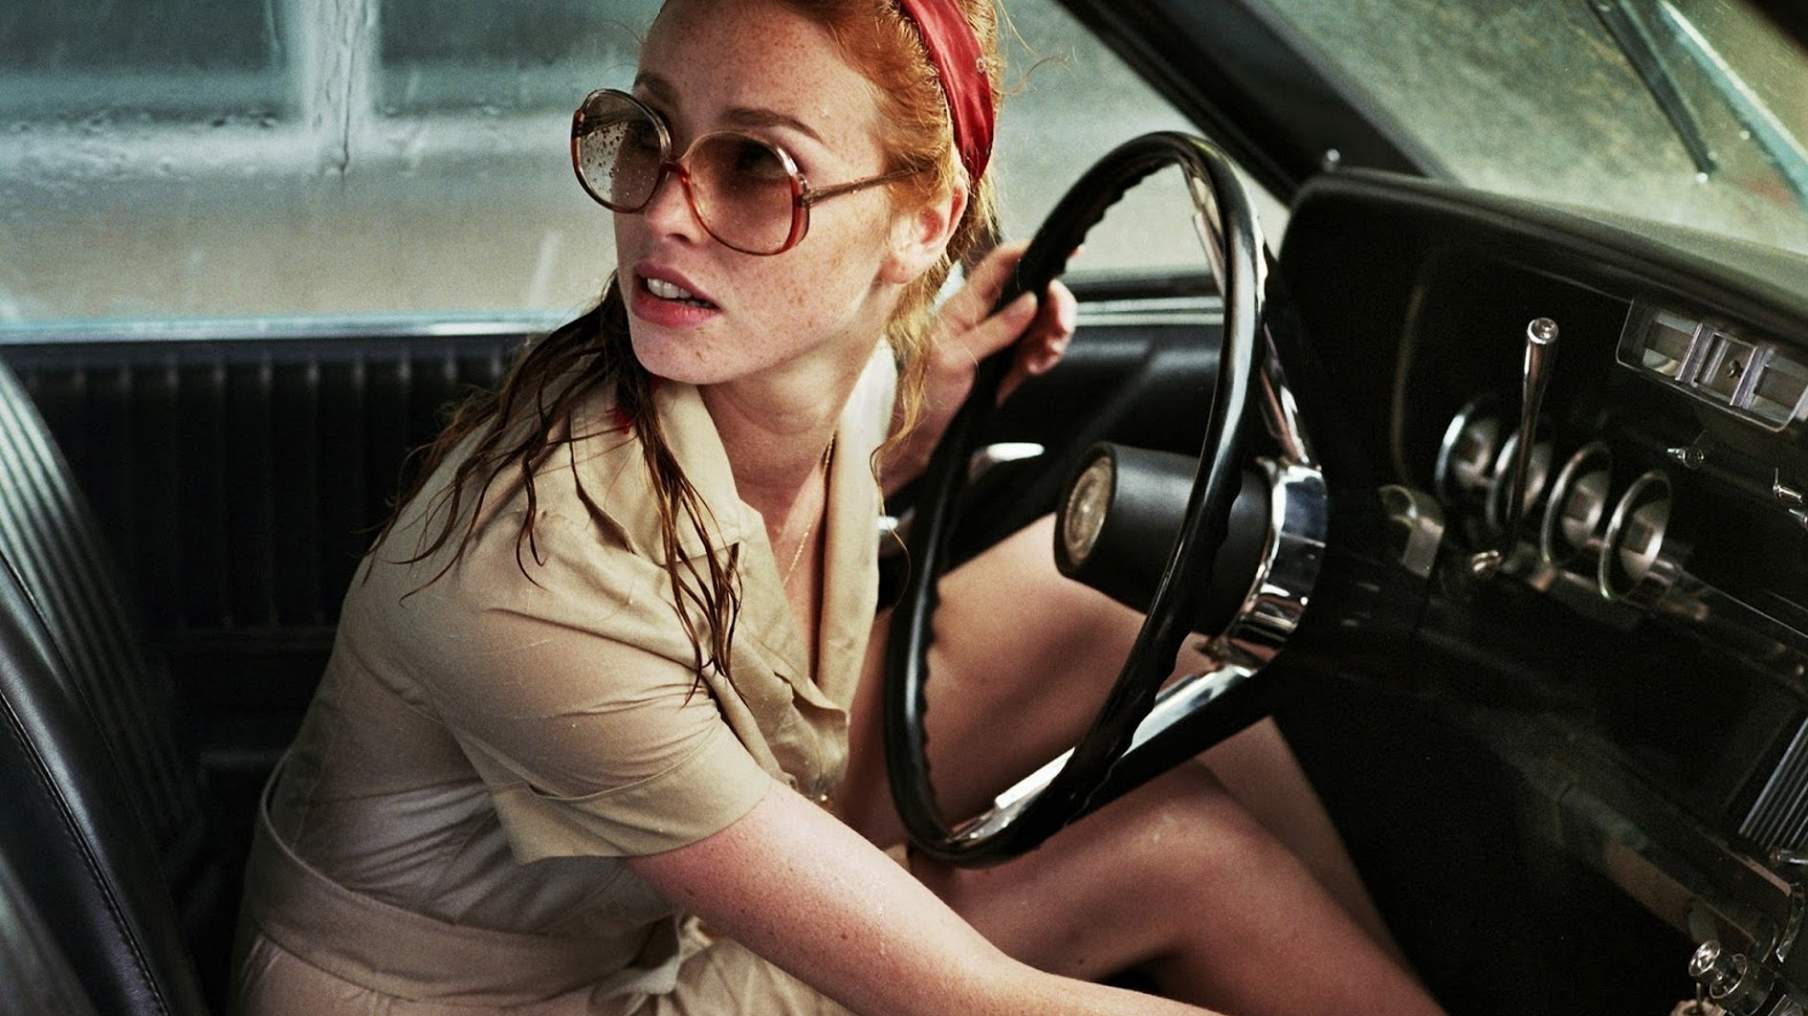 Фрейя Мавор дама в очках и с ружьем в автомобиле